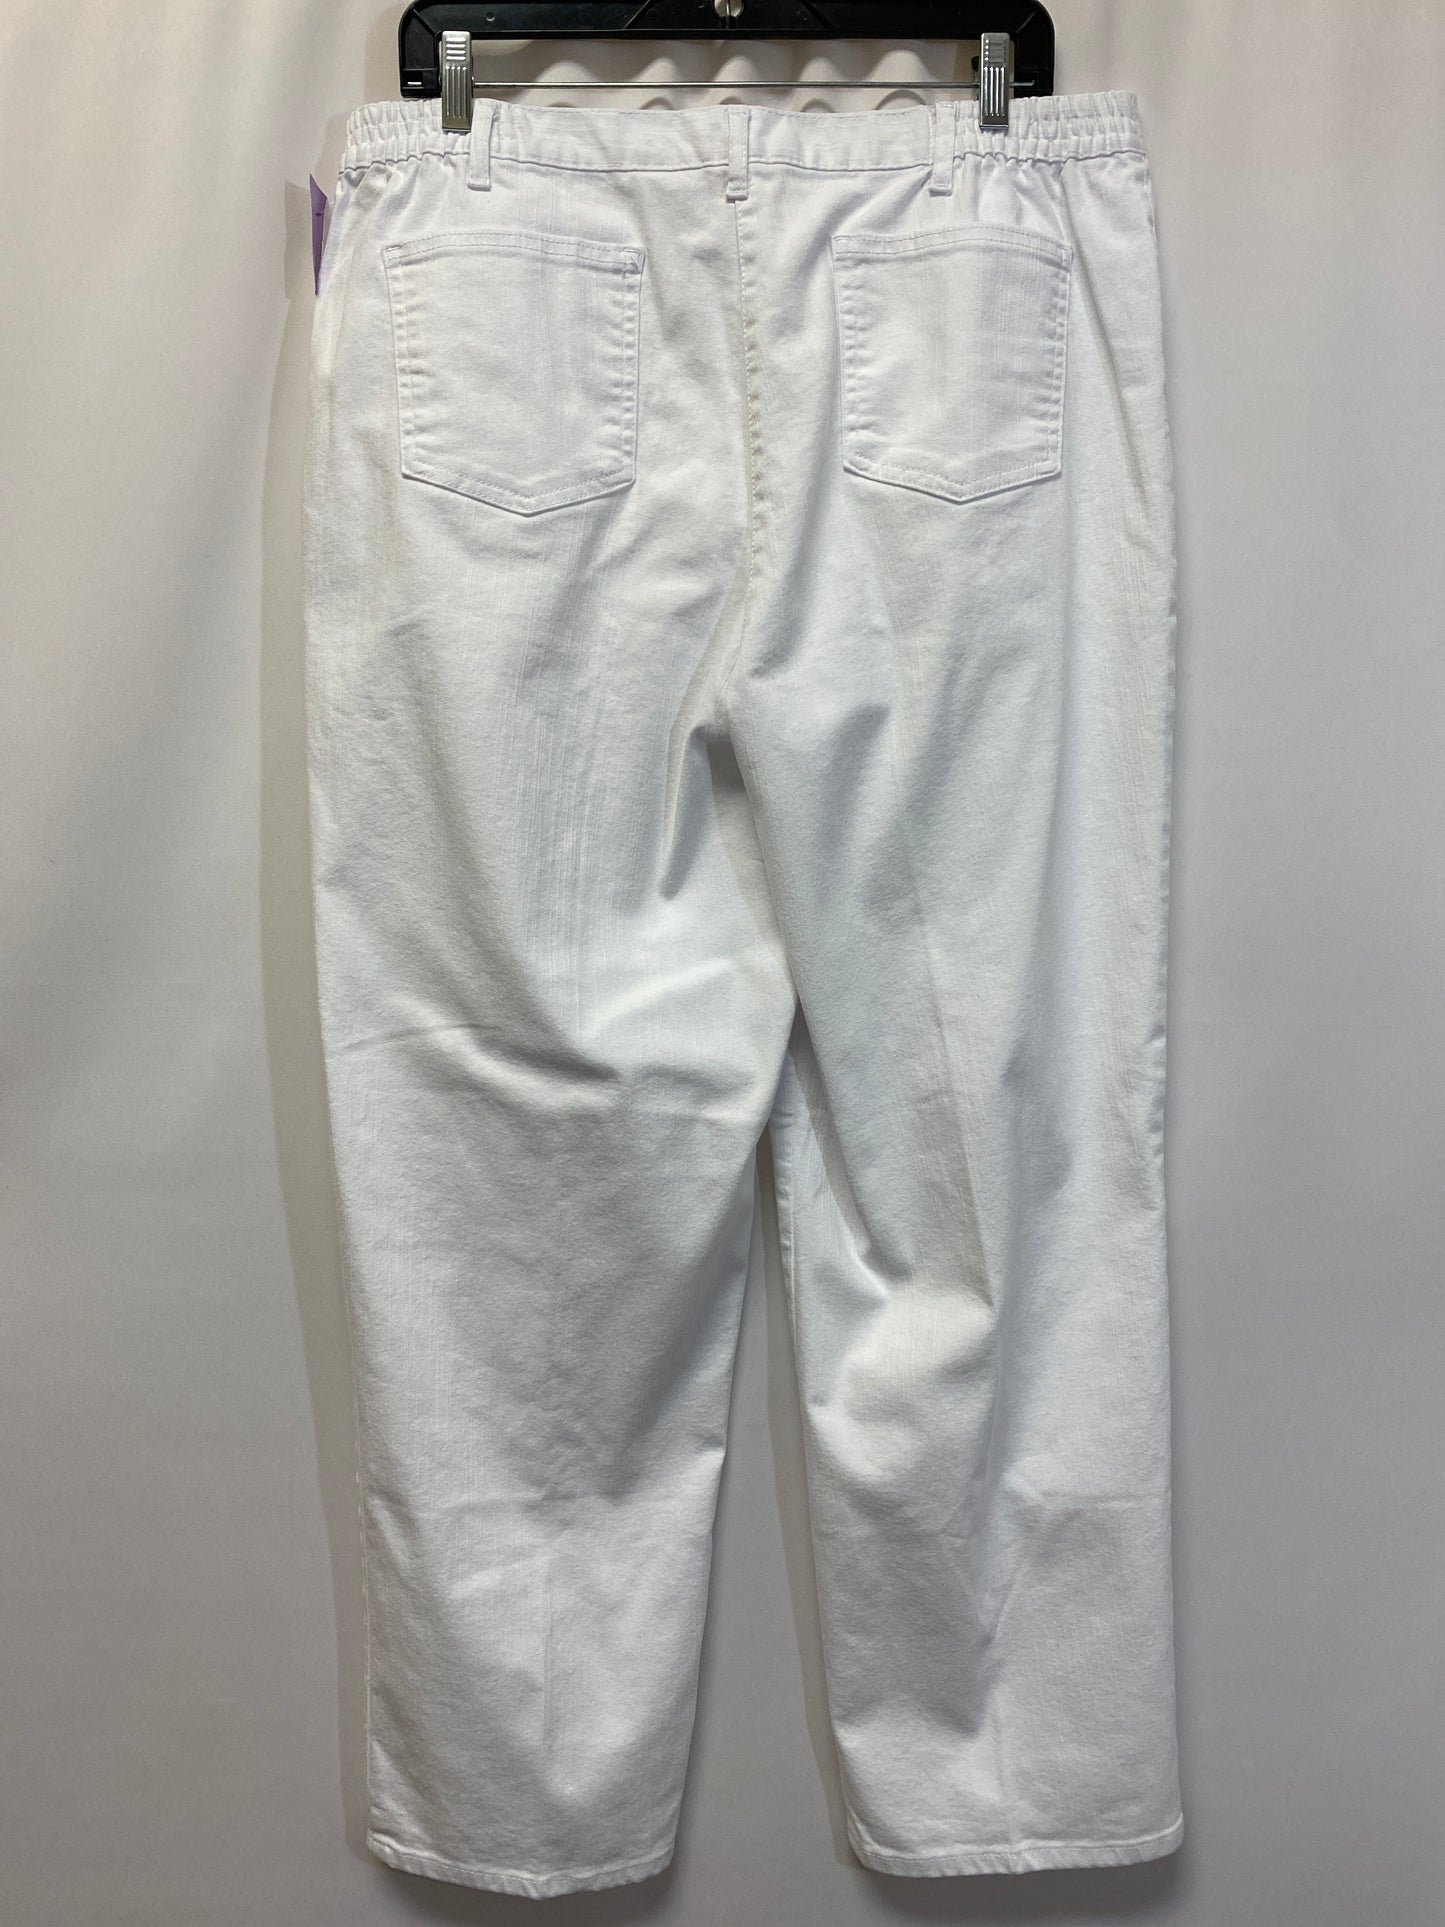 White  Pants Dress Ruby Rd, Size 16